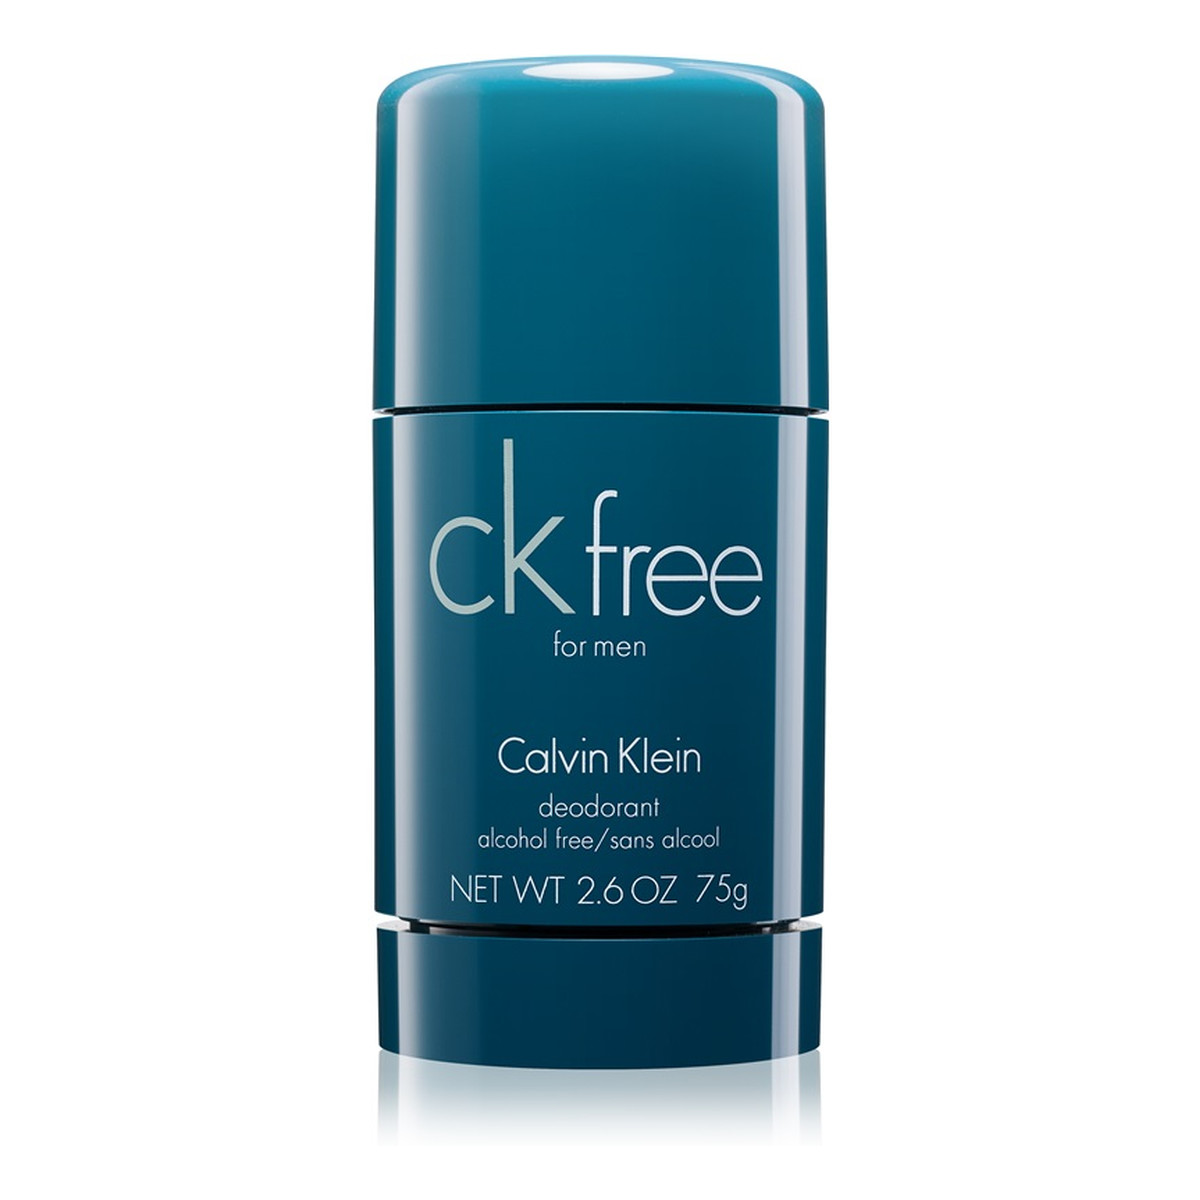 Calvin Klein CK Free dezodorant w sztyfcie dla mężczyzn 75ml